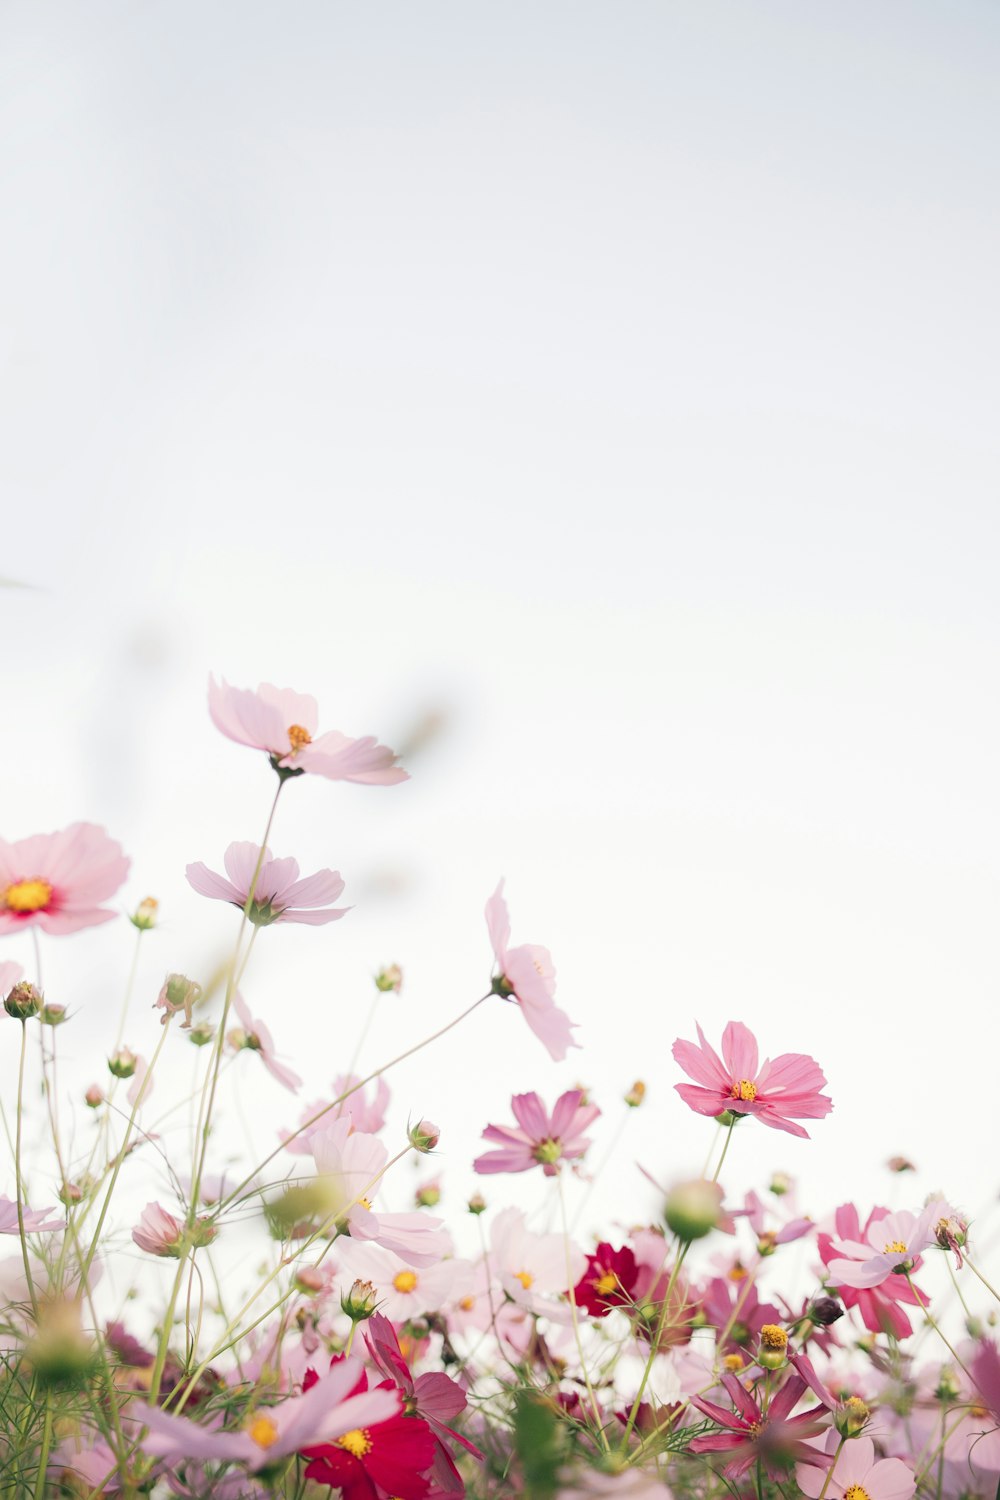 Fiori rosa con sfondo bianco foto – Fiore Immagine gratuita su Unsplash